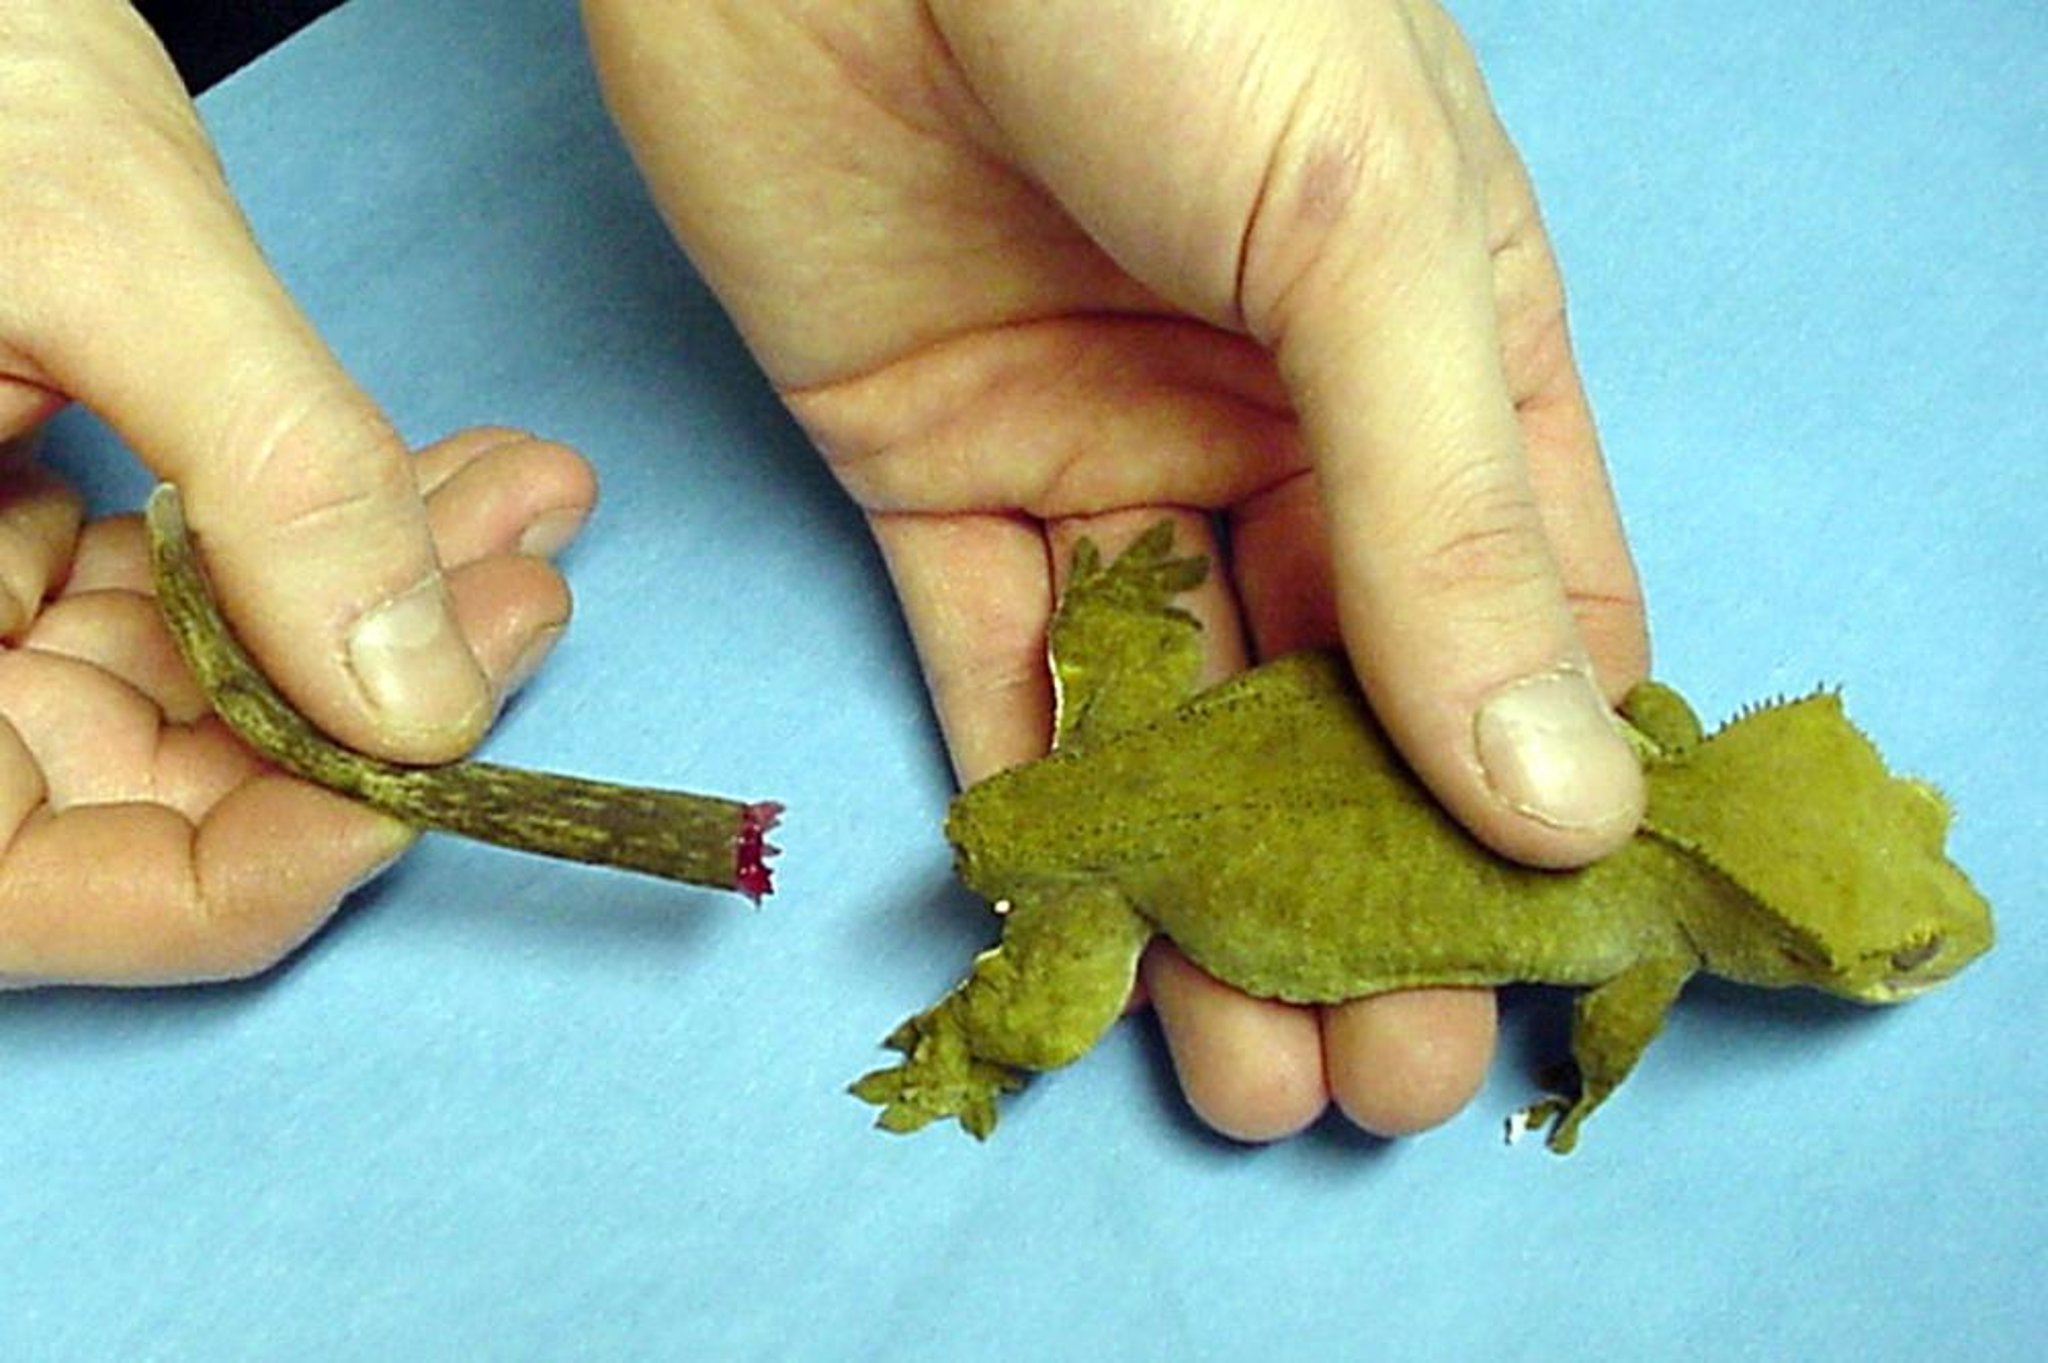 Tail autotomy, gecko